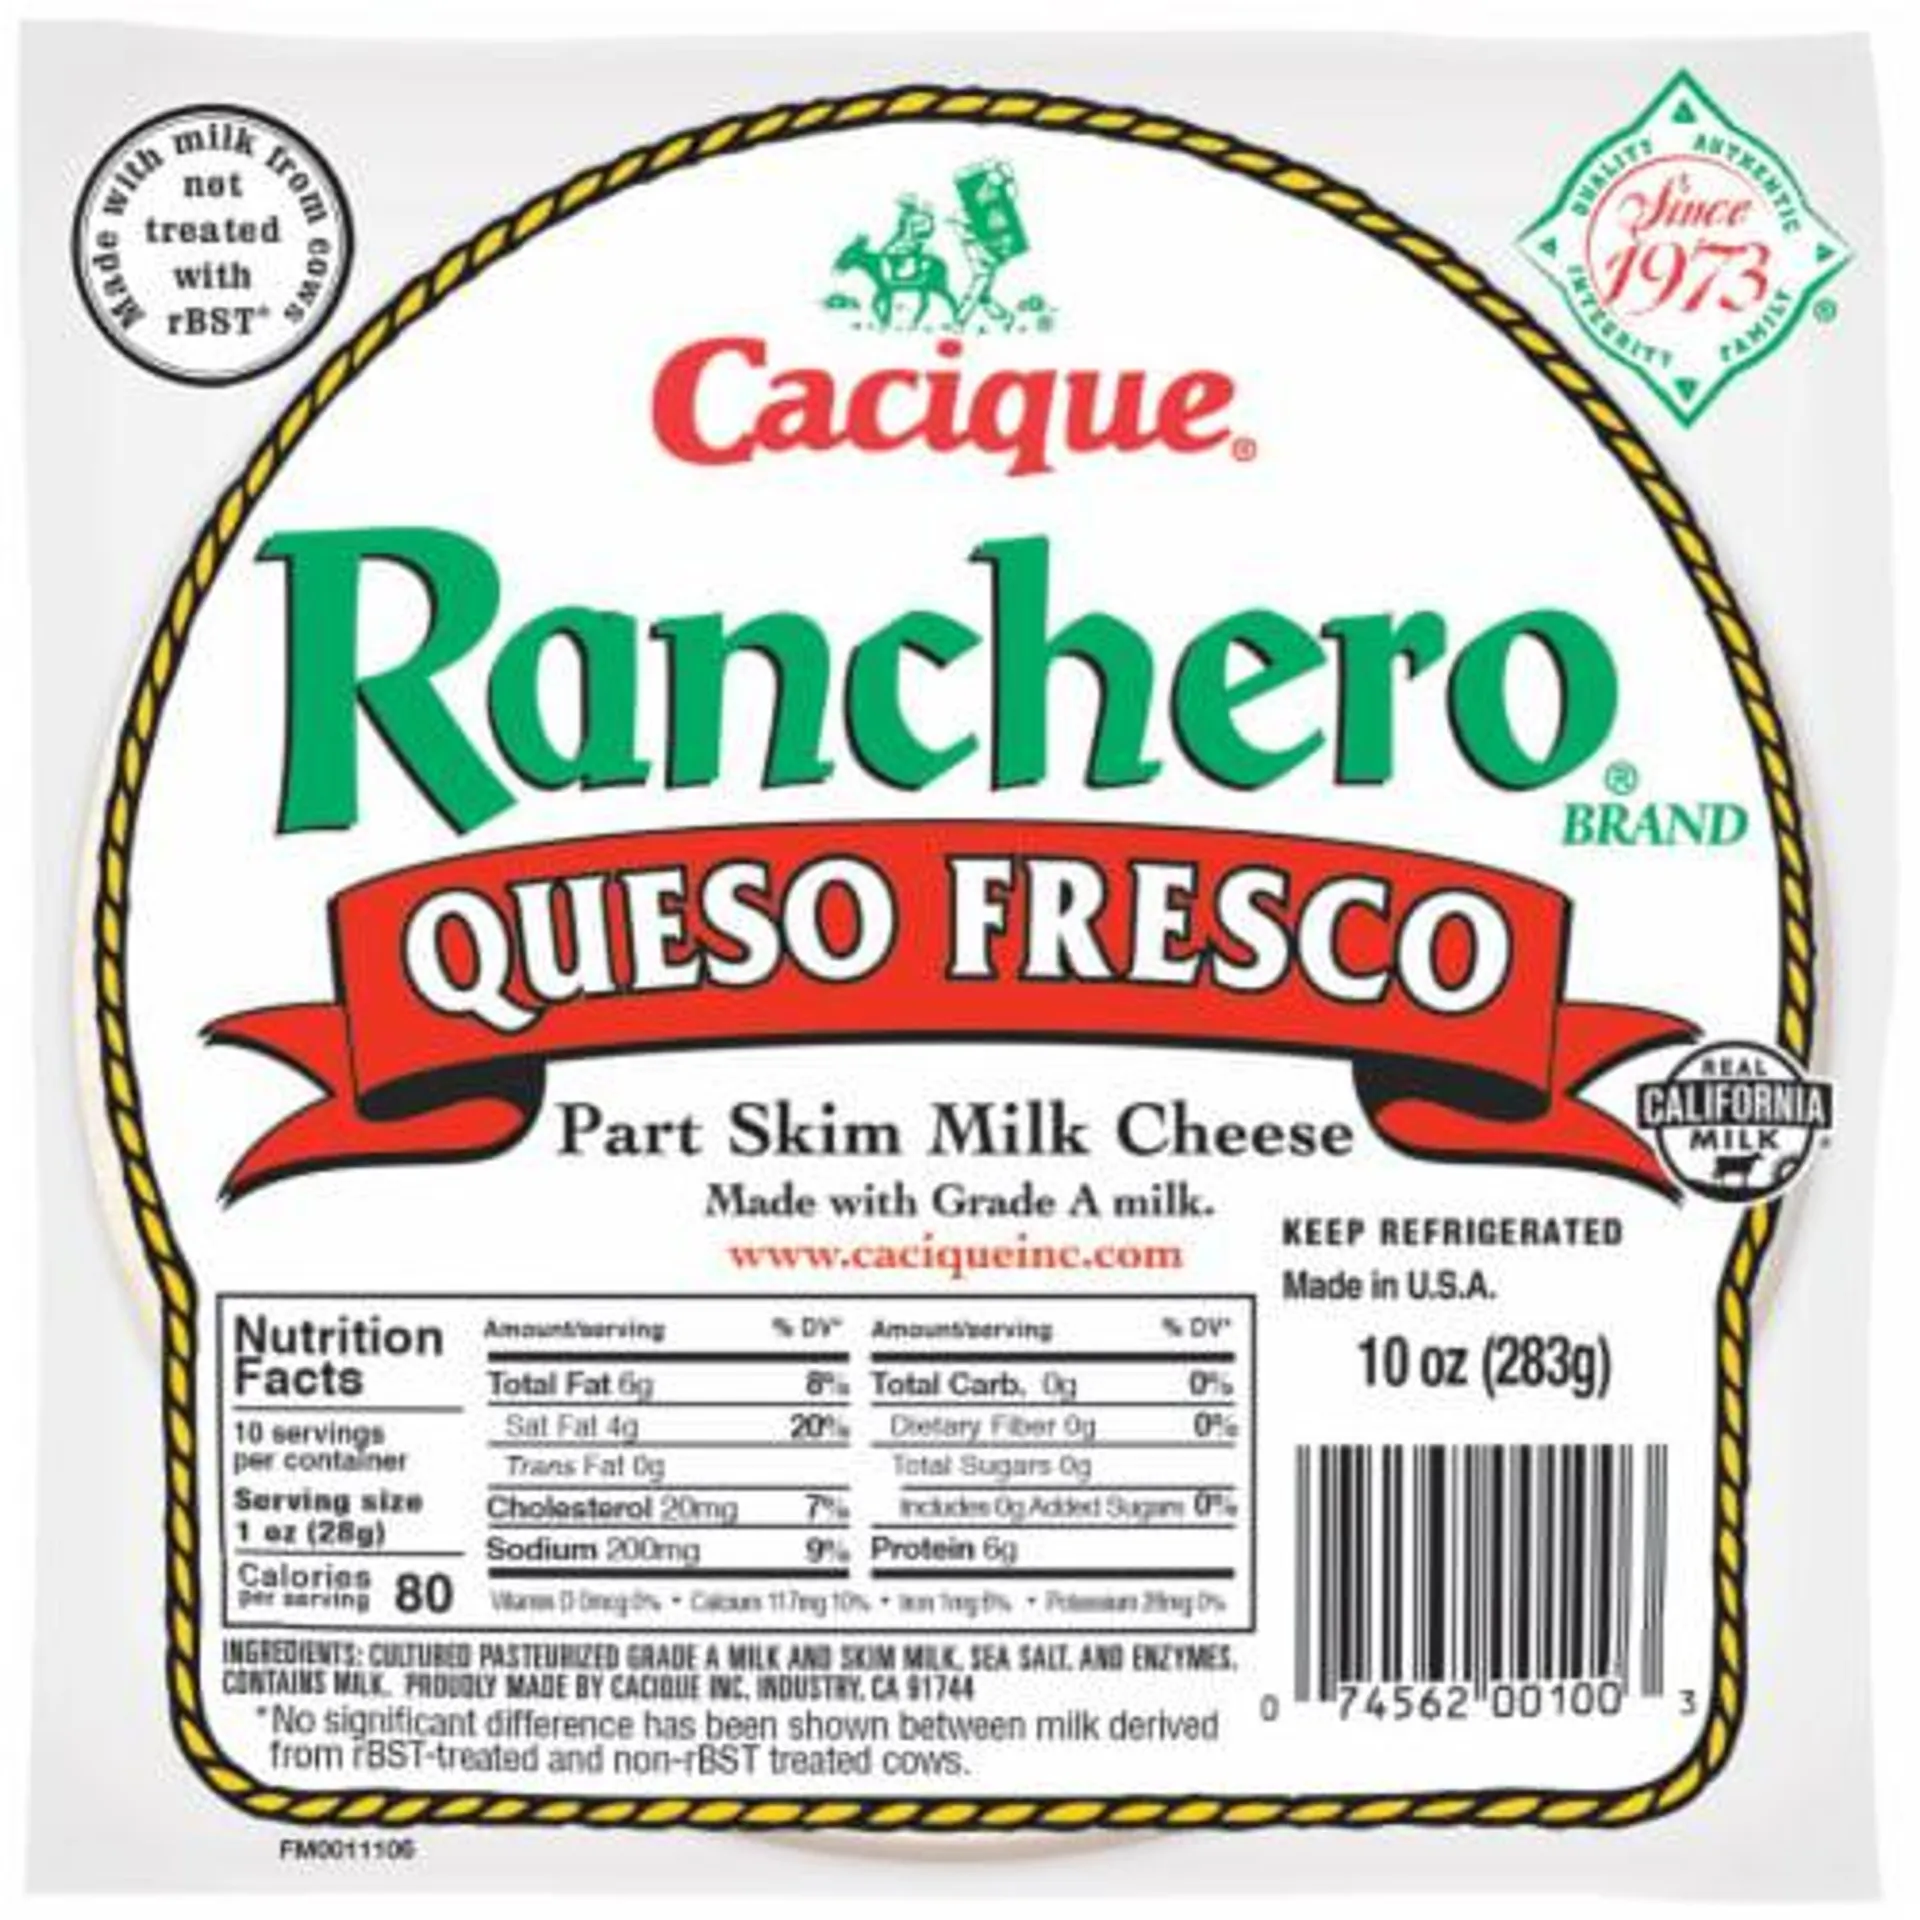 Cacique Ranchero Queso Fresco Part Skim Milk Cheese